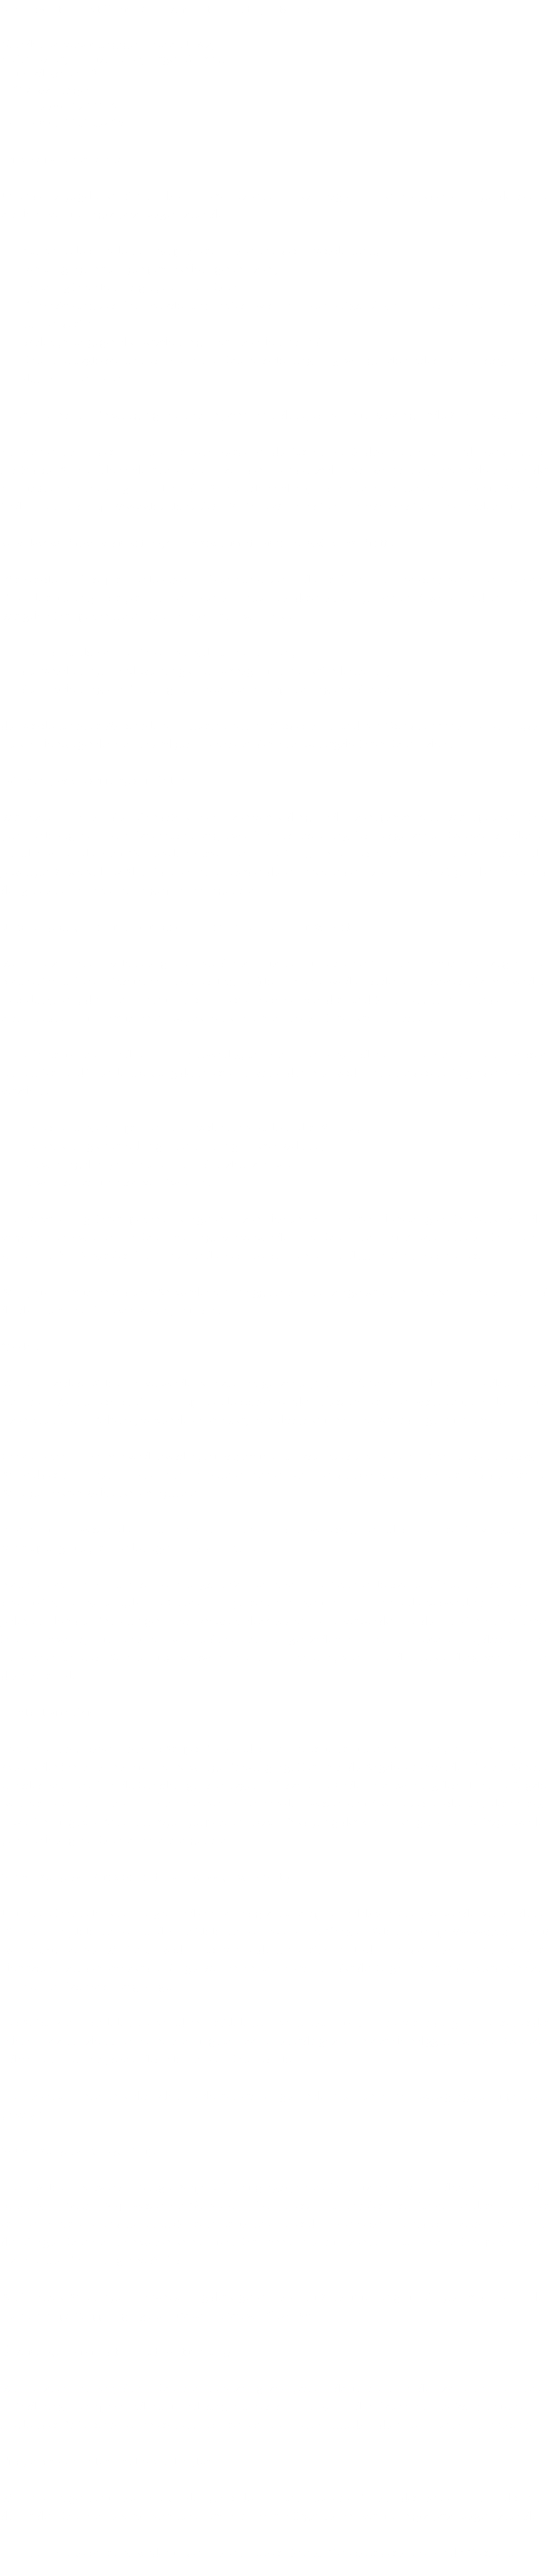 Verantwortliche Stelle im Sinne der Datenschutzgesetze ist Grundstücksverwaltungsgesellschaft UW2, Stefan Bauer, Thomas Bauer, Jürgen Göhring Am Stadtgraben 13 71332 Waiblingen Fon: +49 (0) 172 7110815 Fax: +49 (0) 7151 52436 Ihre Betroffenenrechte Unter den angegebenen Kontaktdaten unseres Datenschutzbeauftragten können Sie jederzeit folgende Rechte ausüben: vermietung(at)kraftwagenhallen.de Auskunft über Ihre bei uns gespeicherten Daten und deren Verarbeitung, Berichtigung unrichtiger personenbezogener Daten, Löschung Ihrer bei uns gespeicherten Daten, Einschränkung der Datenverarbeitung, sofern wir Ihre Daten aufgrund gesetzlicher Pflichten noch nicht löschen dürfen, Widerspruch gegen die Verarbeitung Ihrer Daten bei uns und Datenübertragbarkeit, sofern Sie in die Datenverarbeitung eingewilligt haben oder einen Vertrag mit uns abgeschlossen haben. Sofern Sie uns eine Einwilligung erteilt haben, können Sie diese jederzeit mit Wirkung für die Zukunft widerrufen. Sie können sich jederzeit mit einer Beschwerde an die für Sie zuständige Aufsichtsbehörde wenden. Ihre zuständige Aufsichtsbehörde richtet sich nach dem Bundesland Ihres Wohnsitzes, Ihrer Arbeit oder der mutmaßlichen Verletzung. Eine Liste der Aufsichtsbehörden (für den nichtöffentlichen Bereich) mit Anschrift finden Sie unter: https://www.bfdi.bund.de/DE/Infothek/Anschriften_Links/anschriften_links-node.html. Zwecke der Datenverarbeitung durch die verantwortliche Stelle und Dritte Wir verarbeiten Ihre personenbezogenen Daten nur zu den in dieser Datenschutzerklärung genannten Zwecken. Eine Übermittlung Ihrer persönlichen Daten an Dritte zu anderen als den genannten Zwecken findet nicht statt. Wir geben Ihre persönlichen Daten nur an Dritte weiter, wenn: Sie Ihre ausdrückliche Einwilligung dazu erteilt haben, die Verarbeitung zur Abwicklung eines Vertrags mit Ihnen erforderlich ist, die Verarbeitung zur Erfüllung einer rechtlichen Verpflichtung erforderlich ist, die Verarbeitung zur Wahrung berechtigter Interessen erforderlich ist und kein Grund zur Annahme besteht, dass Sie ein überwiegendes schutzwürdiges Interesse an der Nichtweitergabe Ihrer Daten haben. Löschung bzw. Sperrung der Daten Wir halten uns an die Grundsätze der Datenvermeidung und Datensparsamkeit. Wir speichern Ihre personenbezogenen Daten daher nur so lange, wie dies zur Erreichung der hier genannten Zwecke erforderlich ist oder wie es die vom Gesetzgeber vorgesehenen vielfältigen Speicherfristen vorsehen. Nach Fortfall des jeweiligen Zweckes bzw. Ablauf dieser Fristen werden die entsprechenden Daten routinemäßig und entsprechend den gesetzlichen Vorschriften gesperrt oder gelöscht. Erfassung allgemeiner Informationen beim Besuch unserer Website Wenn Sie auf unsere Website zugreifen, werden automatisch mittels eines Cookies Informationen allgemeiner Natur erfasst. Diese Informationen (Server-Logfiles) beinhalten etwa die Art des Webbrowsers, das verwendete Betriebssystem, den Domainnamen Ihres Internet-Service-Providers und ähnliches. Hierbei handelt es sich ausschließlich um Informationen, welche keine Rückschlüsse auf Ihre Person zulassen. Diese Informationen sind technisch notwendig, um von Ihnen angeforderte Inhalte von Webseiten korrekt auszuliefern und fallen bei Nutzung des Internets zwingend an. Sie werden insbesondere zu folgenden Zwecken verarbeitet: Sicherstellung eines problemlosen Verbindungsaufbaus der Website, Sicherstellung einer reibungslosen Nutzung unserer Website, Auswertung der Systemsicherheit und -stabilität sowie zu weiteren administrativen Zwecken. Die Verarbeitung Ihrer personenbezogenen Daten basiert auf unserem berechtigten Interesse aus den vorgenannten Zwecken zur Datenerhebung. Wir verwenden Ihre Daten nicht, um Rückschlüsse auf Ihre Person zu ziehen. Empfänger der Daten sind nur die verantwortliche Stelle und ggf. Auftragsverarbeiter. Anonyme Informationen dieser Art werden von uns ggfs. statistisch ausgewertet, um unseren Internetauftritt und die dahinterstehende Technik zu optimieren. Cookies Wie viele andere Webseiten verwenden wir auch so genannte „Cookies“. Cookies sind kleine Textdateien, die von einem Websiteserver auf Ihre Festplatte übertragen werden. Hierdurch erhalten wir automatisch bestimmte Daten wie z. B. IP-Adresse, verwendeter Browser, Betriebssystem und Ihre Verbindung zum Internet. Cookies können nicht verwendet werden, um Programme zu starten oder Viren auf einen Computer zu übertragen. Anhand der in Cookies enthaltenen Informationen können wir Ihnen die Navigation erleichtern und die korrekte Anzeige unserer Webseiten ermöglichen. In keinem Fall werden die von uns erfassten Daten an Dritte weitergegeben oder ohne Ihre Einwilligung eine Verknüpfung mit personenbezogenen Daten hergestellt. Natürlich können Sie unsere Website grundsätzlich auch ohne Cookies betrachten. Internet-Browser sind regelmäßig so eingestellt, dass sie Cookies akzeptieren. Im Allgemeinen können Sie die Verwendung von Cookies jederzeit über die Einstellungen Ihres Browsers deaktivieren. Bitte verwenden Sie die Hilfefunktionen Ihres Internetbrowsers, um zu erfahren, wie Sie diese Einstellungen ändern können. Bitte beachten Sie, dass einzelne Funktionen unserer Website möglicherweise nicht funktionieren, wenn Sie die Verwendung von Cookies deaktiviert haben. Kontaktformular Treten Sie bzgl. Fragen jeglicher Art per E-Mail oder Kontaktformular mit uns in Kontakt, erteilen Sie uns zum Zwecke der Kontaktaufnahme Ihre freiwillige Einwilligung. Hierfür ist die Angabe einer validen E-Mail-Adresse erforderlich. Diese dient der Zuordnung der Anfrage und der anschließenden Beantwortung derselben. Die Angabe weiterer Daten ist optional. Die von Ihnen gemachten Angaben werden zum Zwecke der Bearbeitung der Anfrage sowie für mögliche Anschlussfragen gespeichert. Nach Erledigung der von Ihnen gestellten Anfrage werden personenbezogene Daten automatisch gelöscht. Verwendung von Scriptbibliotheken (Google Webfonts) Um unsere Inhalte browserübergreifend korrekt und grafisch ansprechend darzustellen, verwenden wir auf dieser Website Scriptbibliotheken und Schriftbibliotheken wie z. B. Google Webfonts (https://www.google.com/webfonts/). Google Webfonts werden zur Vermeidung mehrfachen Ladens in den Cache Ihres Browsers übertragen. Falls der Browser die Google Webfonts nicht unterstützt oder den Zugriff unterbindet, werden Inhalte in einer Standardschrift angezeigt. Der Aufruf von Scriptbibliotheken oder Schriftbibliotheken löst automatisch eine Verbindung zum Betreiber der Bibliothek aus. Dabei ist es theoretisch möglich – aktuell allerdings auch unklar ob und ggf. zu welchen Zwecken – dass Betreiber entsprechender Bibliotheken Daten erheben. Die Datenschutzrichtlinie des Bibliothekbetreibers Google finden Sie hier: https://www.google.com/policies/privacy/ Verwendung von Google Maps Diese Webseite verwendet Google Maps API, um geographische Informationen visuell darzustellen. Bei der Nutzung von Google Maps werden von Google auch Daten über die Nutzung der Kartenfunktionen durch Besucher erhoben, verarbeitet und genutzt. Nähere Informationen über die Datenverarbeitung durch Google können Sie den Google-Datenschutzhinweisen entnehmen. Dort können Sie im Datenschutzcenter auch Ihre persönlichen Datenschutz-Einstellungen verändern. Ausführliche Anleitungen zur Verwaltung der eigenen Daten im Zusammenhang mit Google-Produkten finden Sie hier: https://support.google.com/accounts/answer/3024190 Änderung unserer Datenschutzbestimmungen Wir behalten uns vor, diese Datenschutzerklärung anzupassen, damit sie stets den aktuellen rechtlichen Anforderungen entspricht oder um Änderungen unserer Leistungen in der Datenschutzerklärung umzusetzen, z.B. bei der Einführung neuer Services. Für Ihren erneuten Besuch gilt dann die neue Datenschutzerklärung. Fragen an den Datenschutzbeauftragten Wenn Sie Fragen zum Datenschutz haben, schreiben Sie uns bitte eine E-Mail oder wenden Sie sich direkt an die für den Datenschutz verantwortliche Person in unserer Organisation: vermietung(at)kraftwagenhallen.de Die Datenschutzerklärung wurde mit dem Datenschutzerklärungs-Generator der activeMind AG erstellt. 